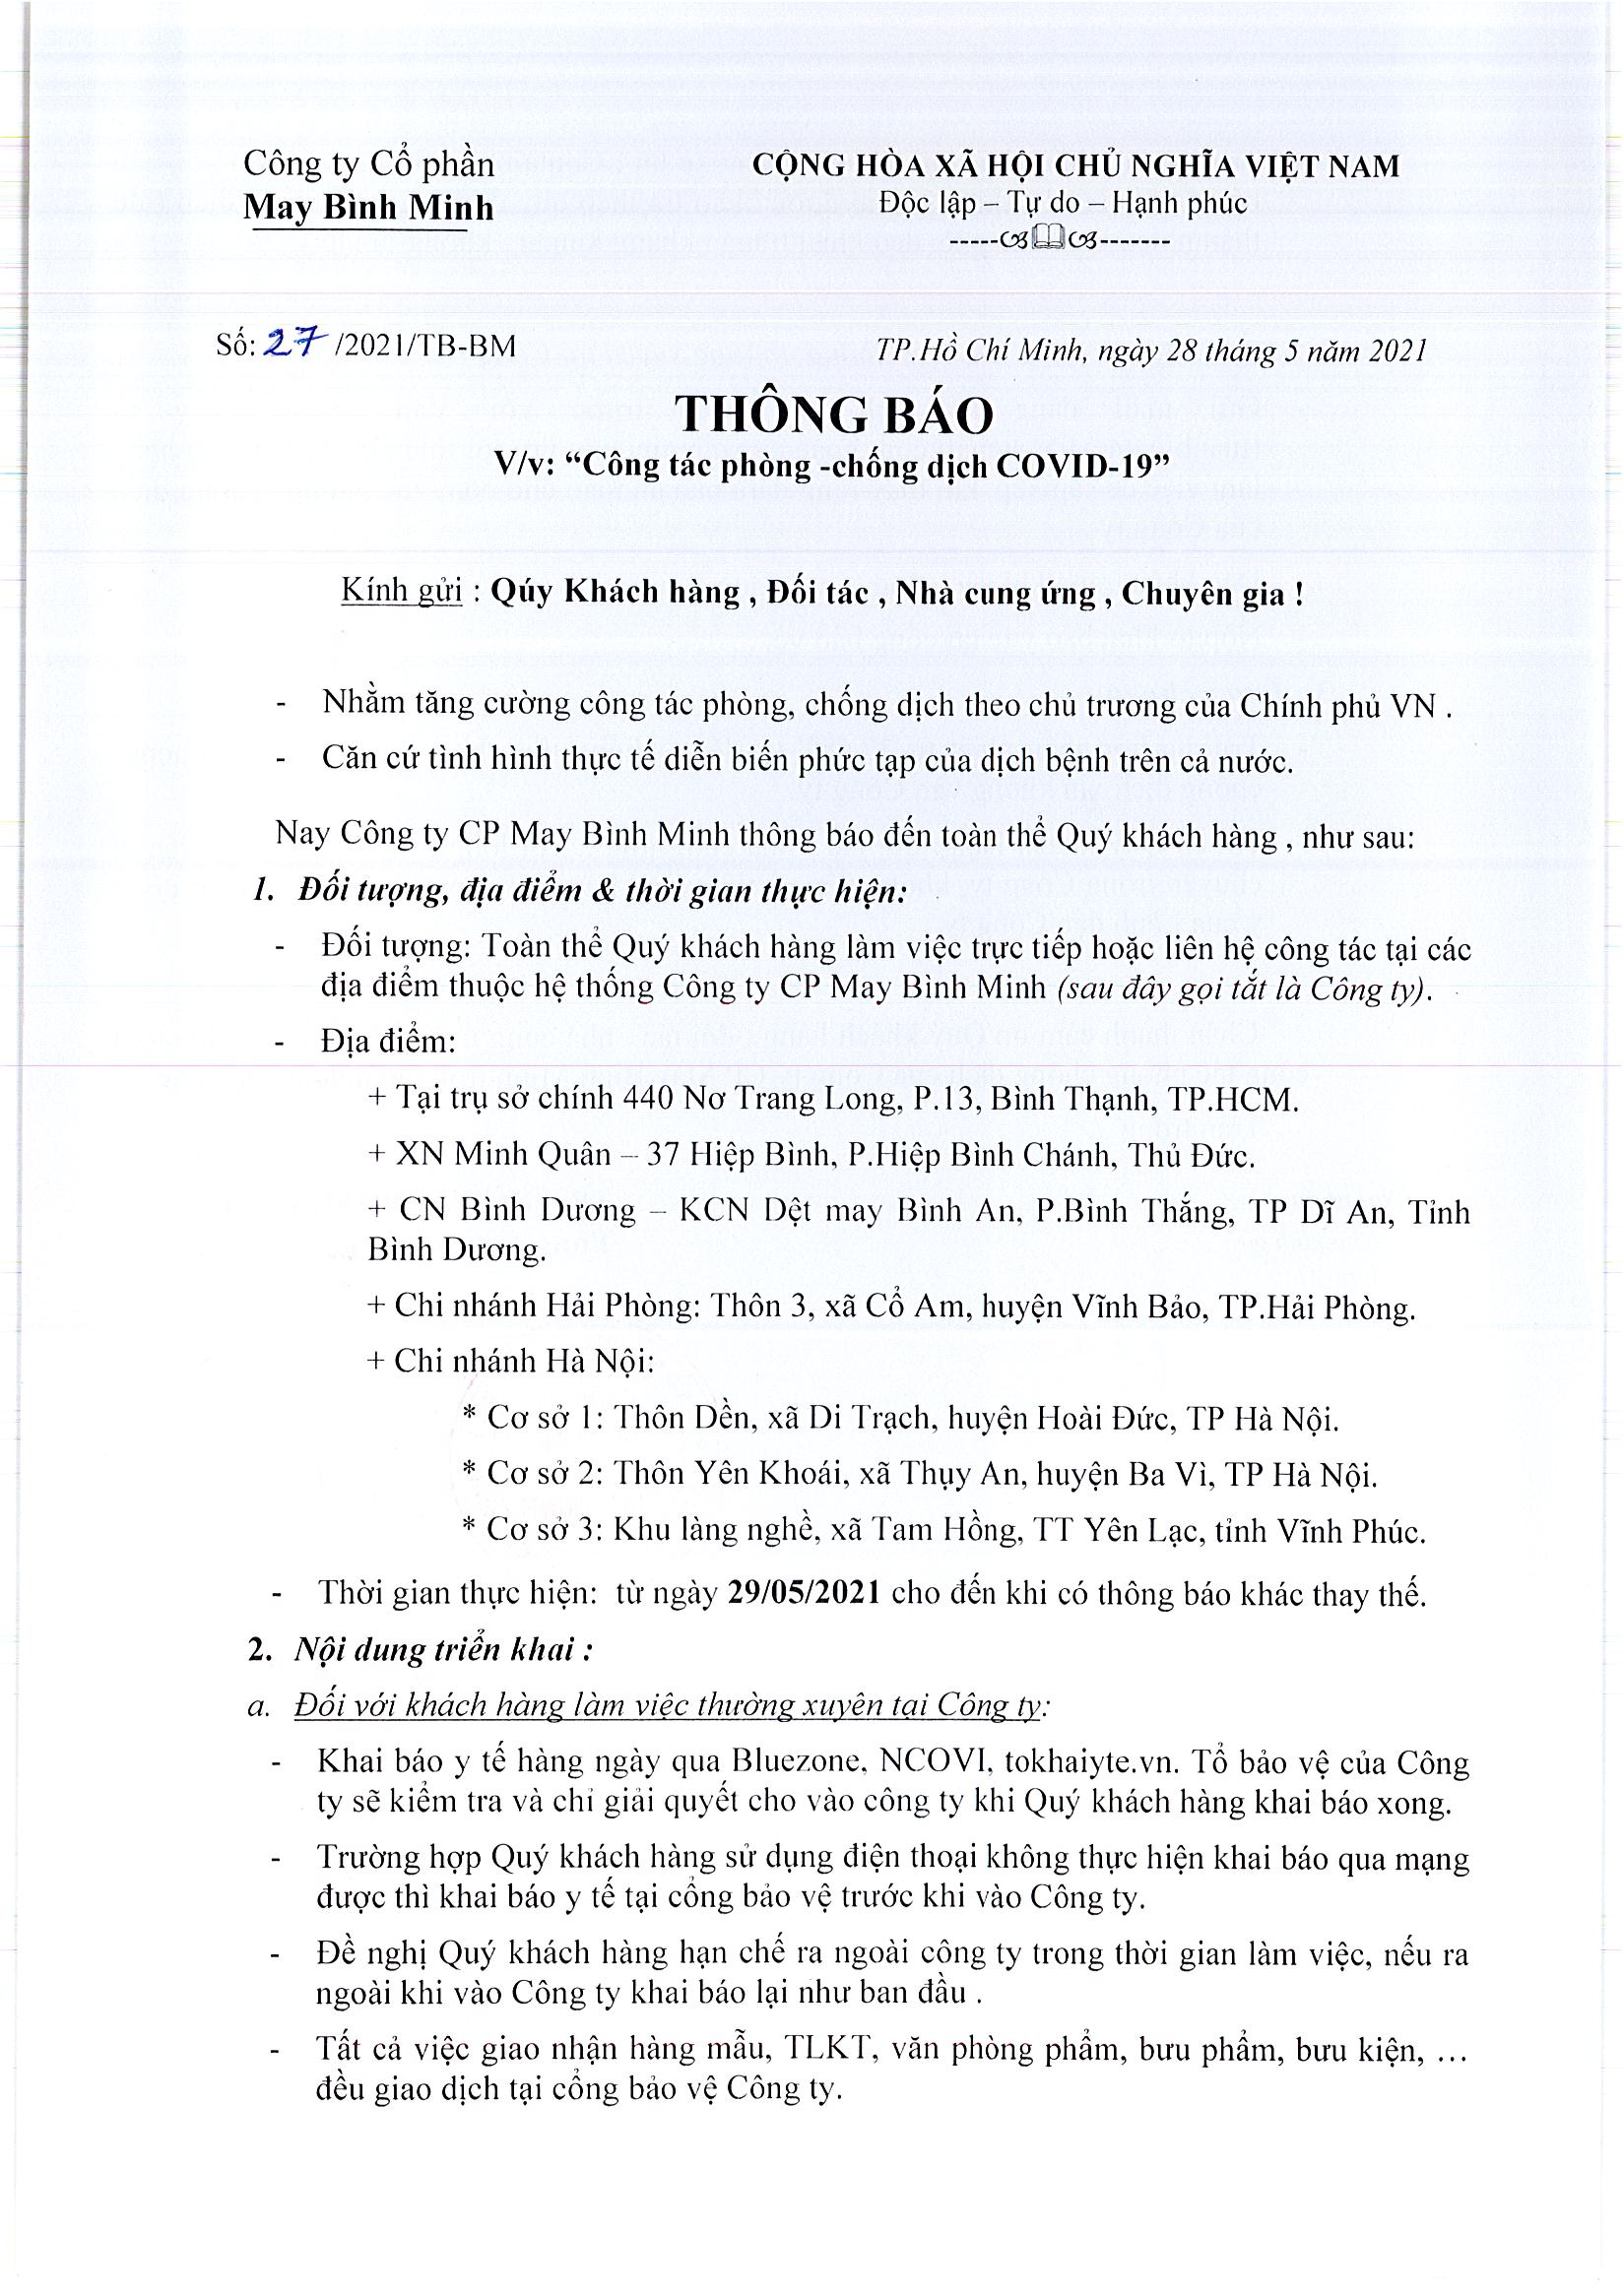 Thong_bao_phong_chong_dich_bovid_so_27_Page_1